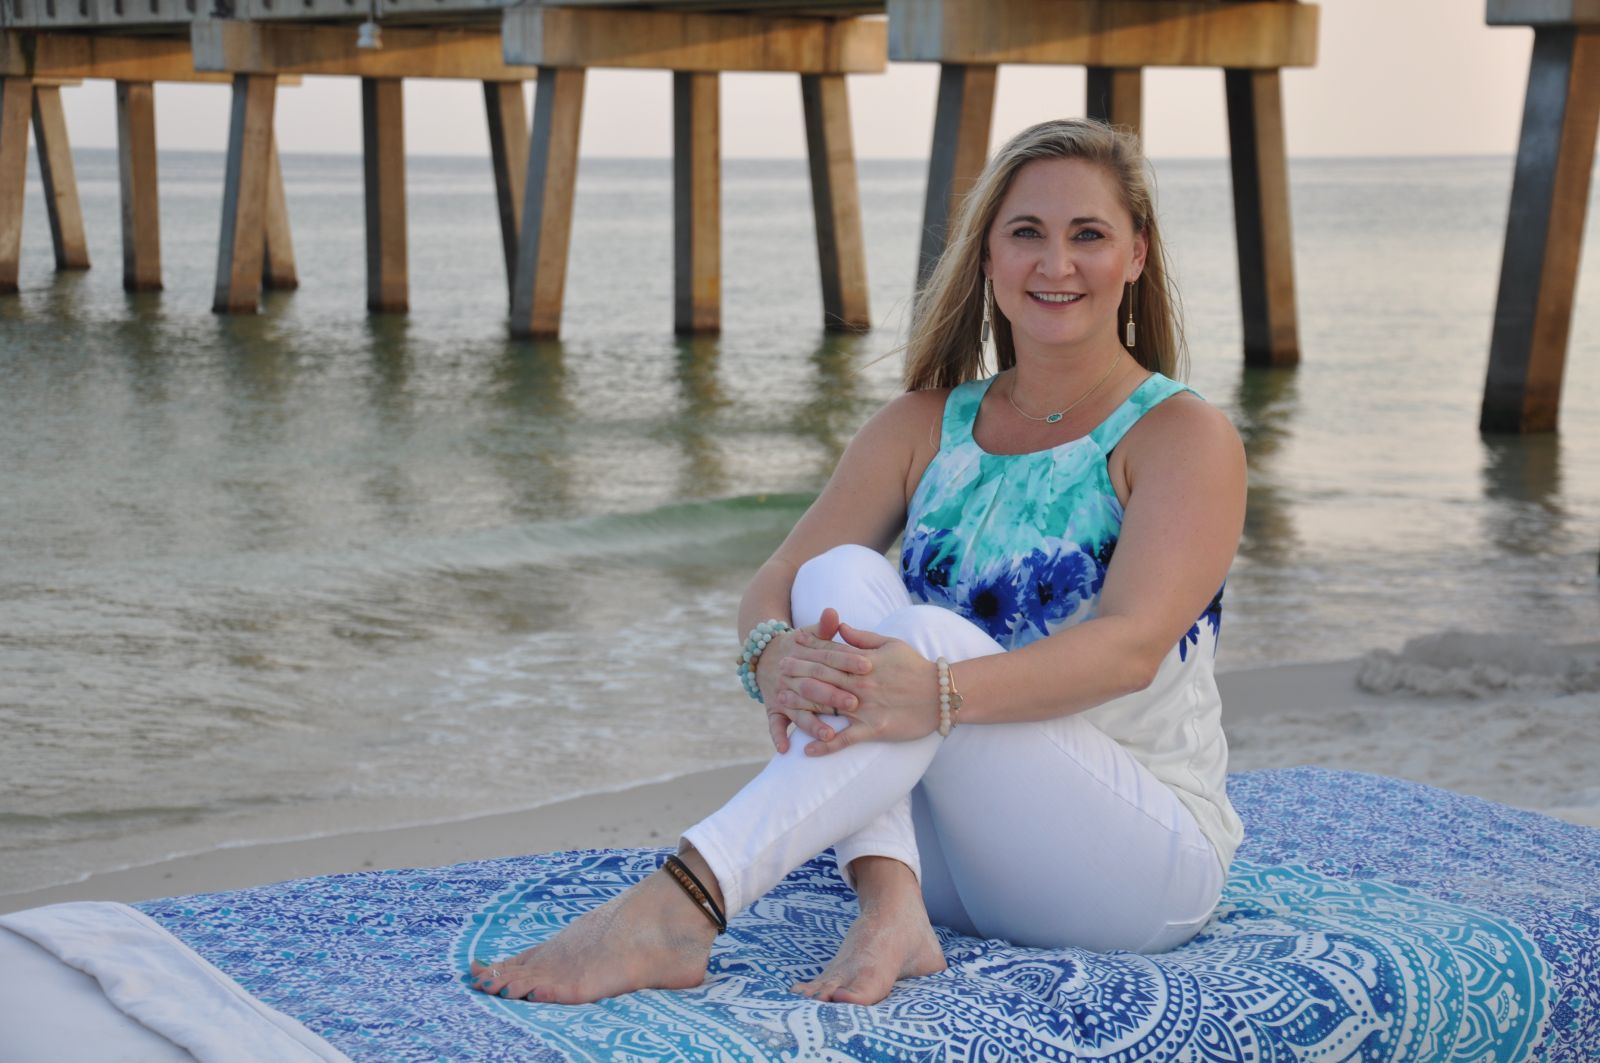 About Gulf Shores Massage Therapy Austin Massage